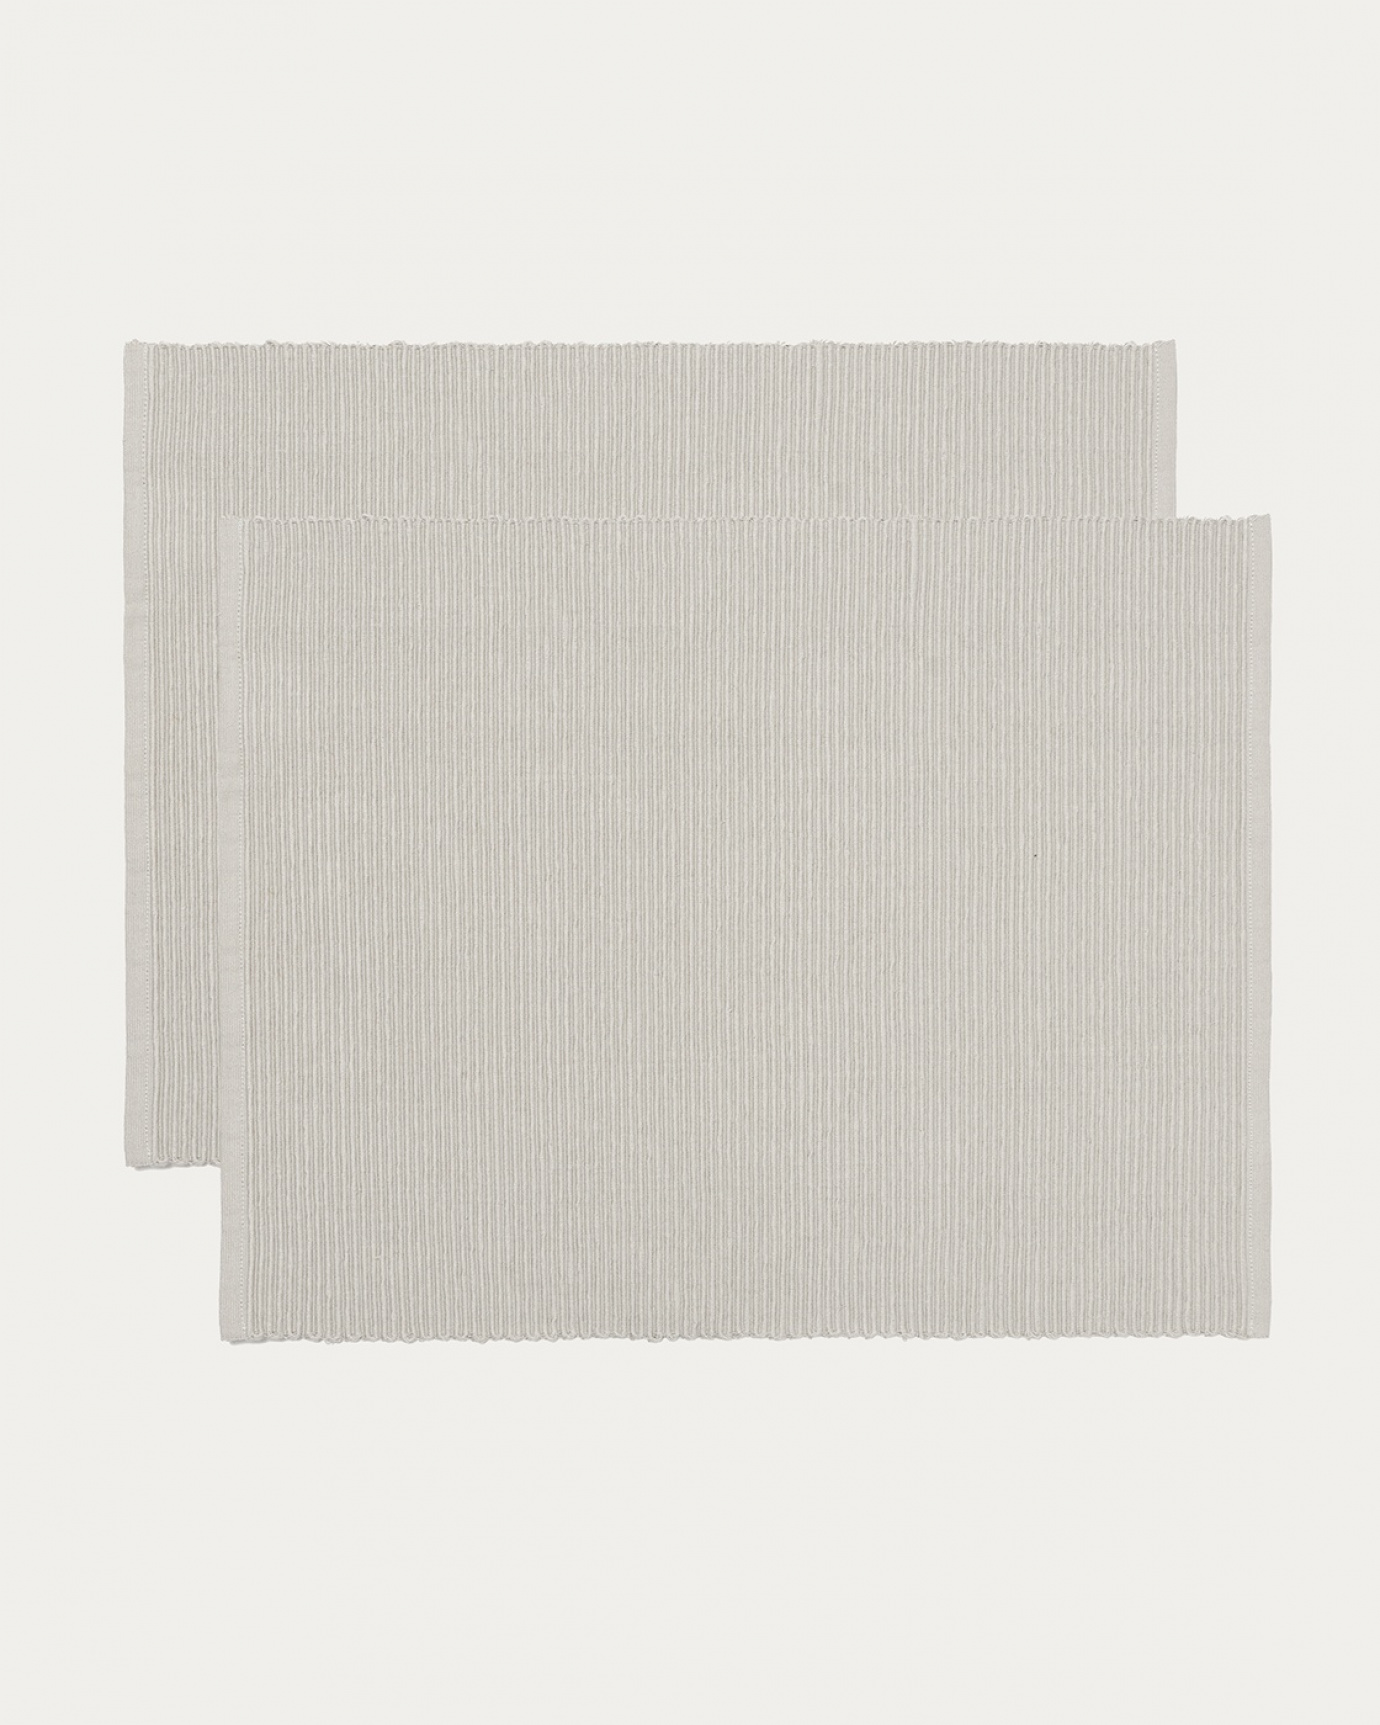 Produktbild ljusgrå UNI bordstablett av mjuk bomull i ribbad kvalité från LINUM DESIGN. Storlek 35x46 cm och säljs i 2-pack.